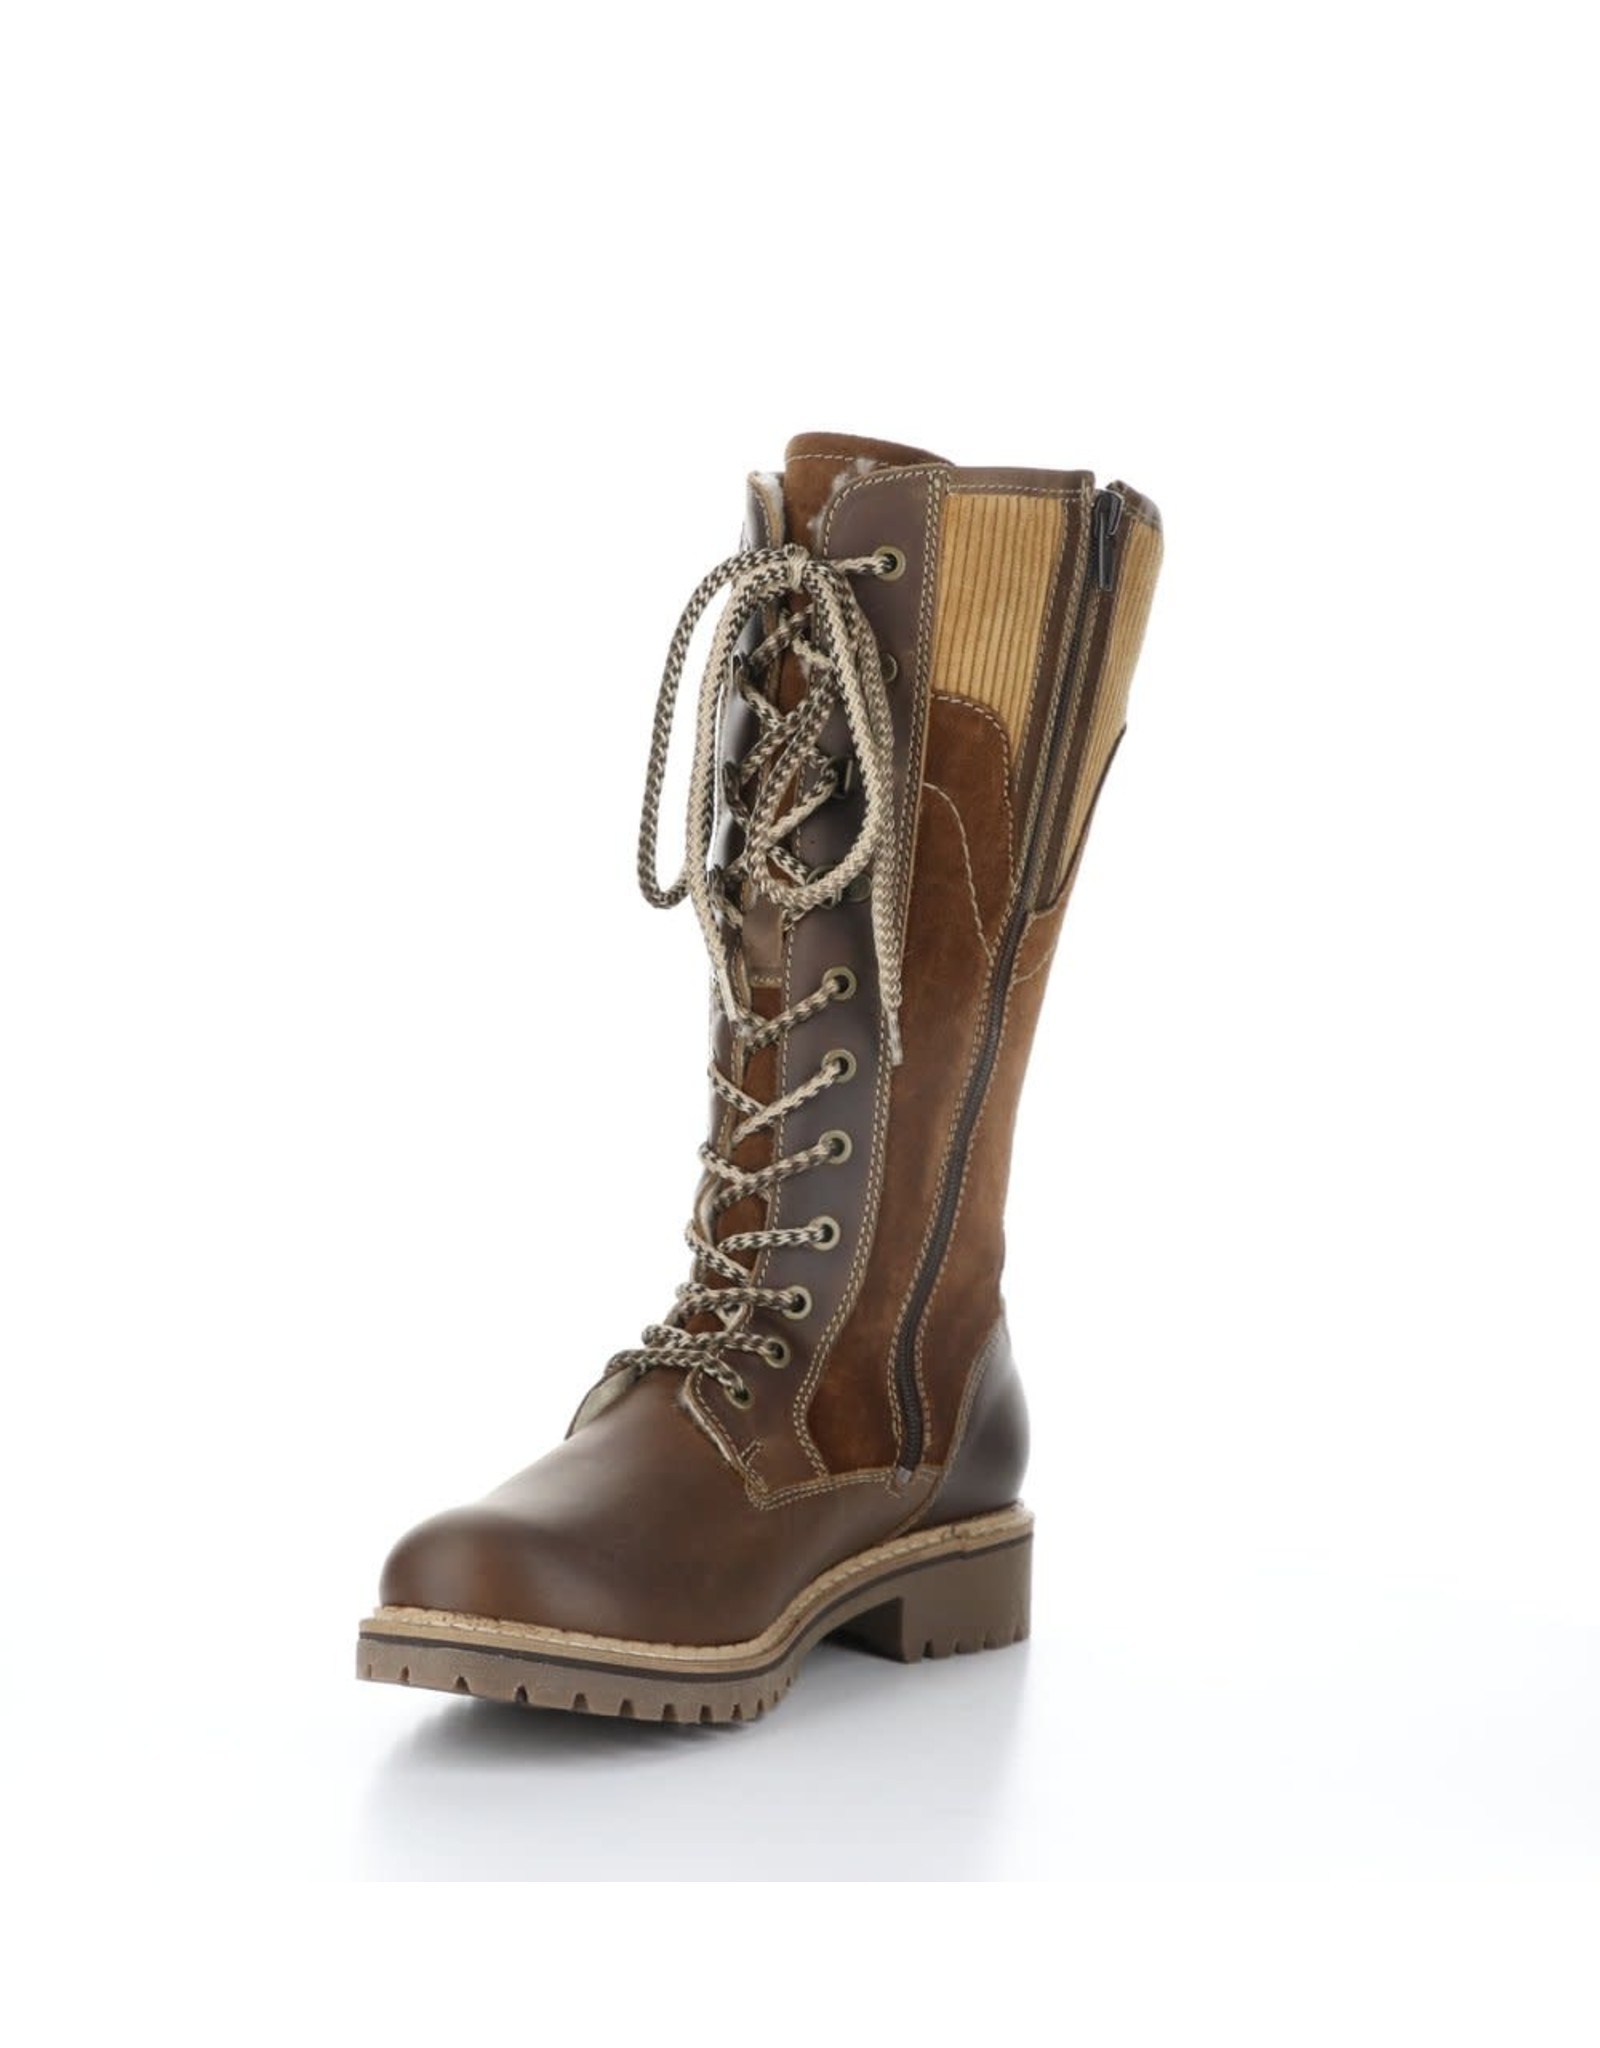 Bos & Co Bos & Co - Harrison waterproof boot (camel)